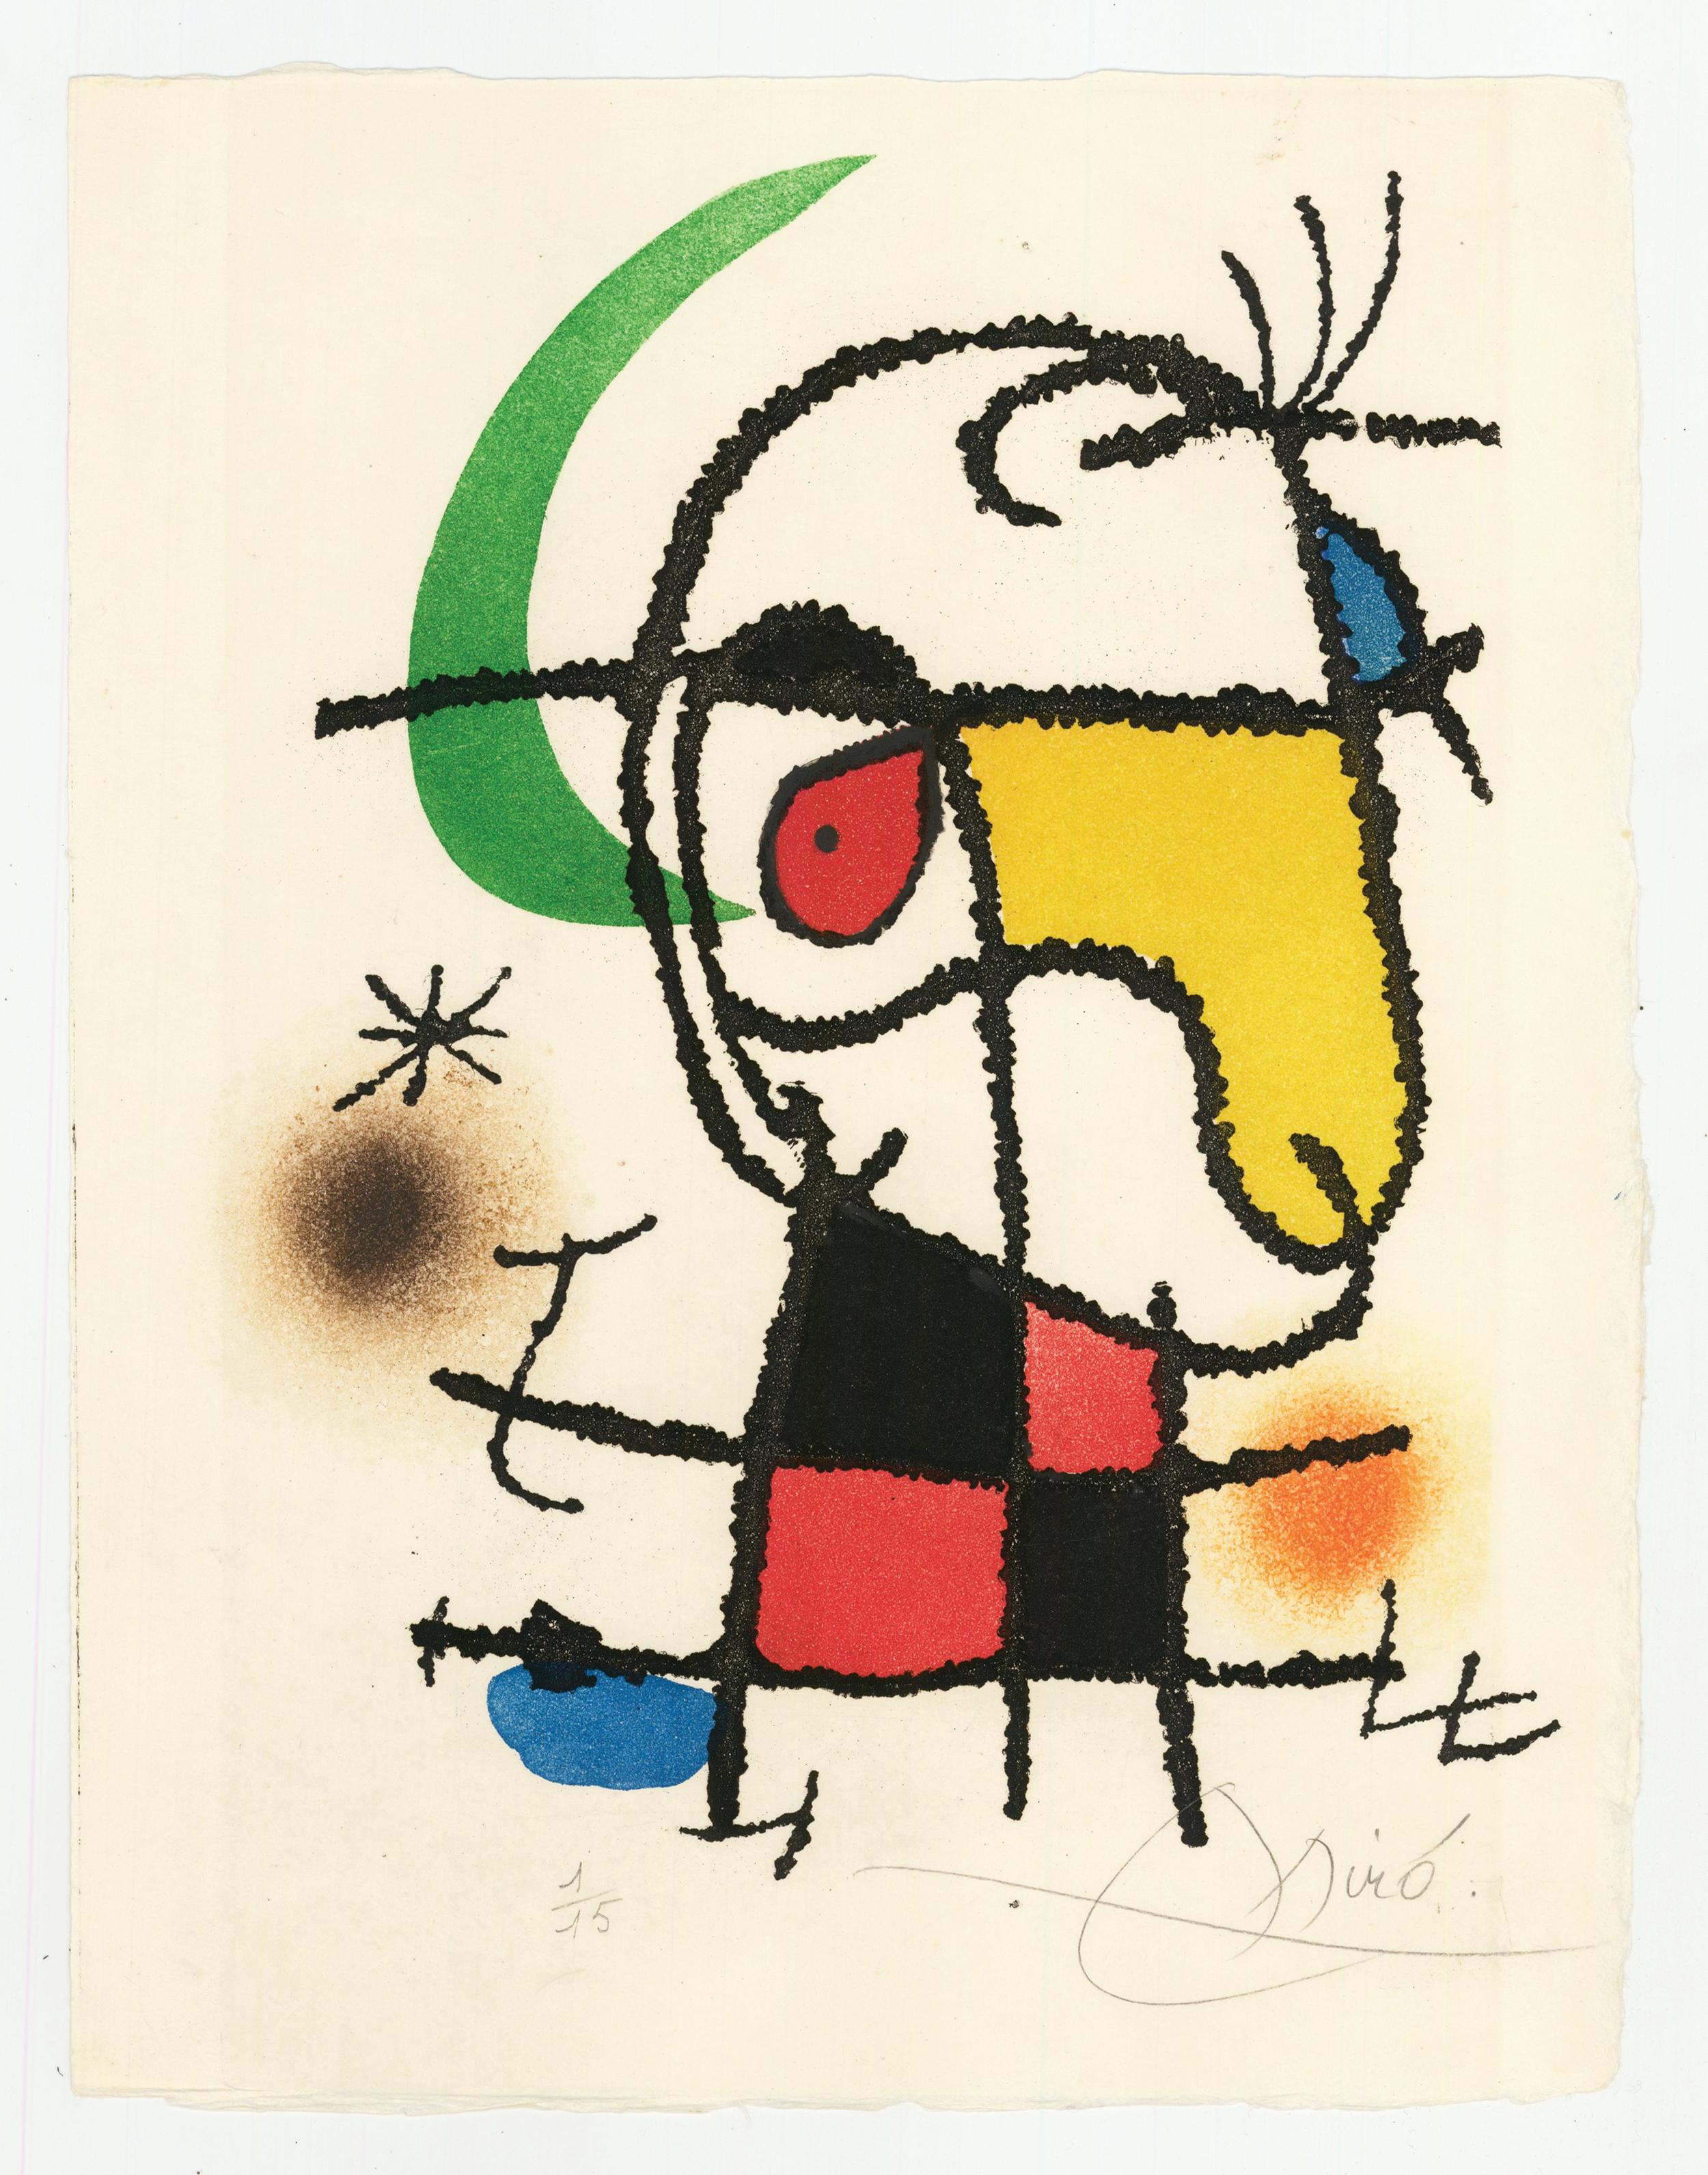 Le Vent Parmi les Roseaux.  - Art by Joan Miró